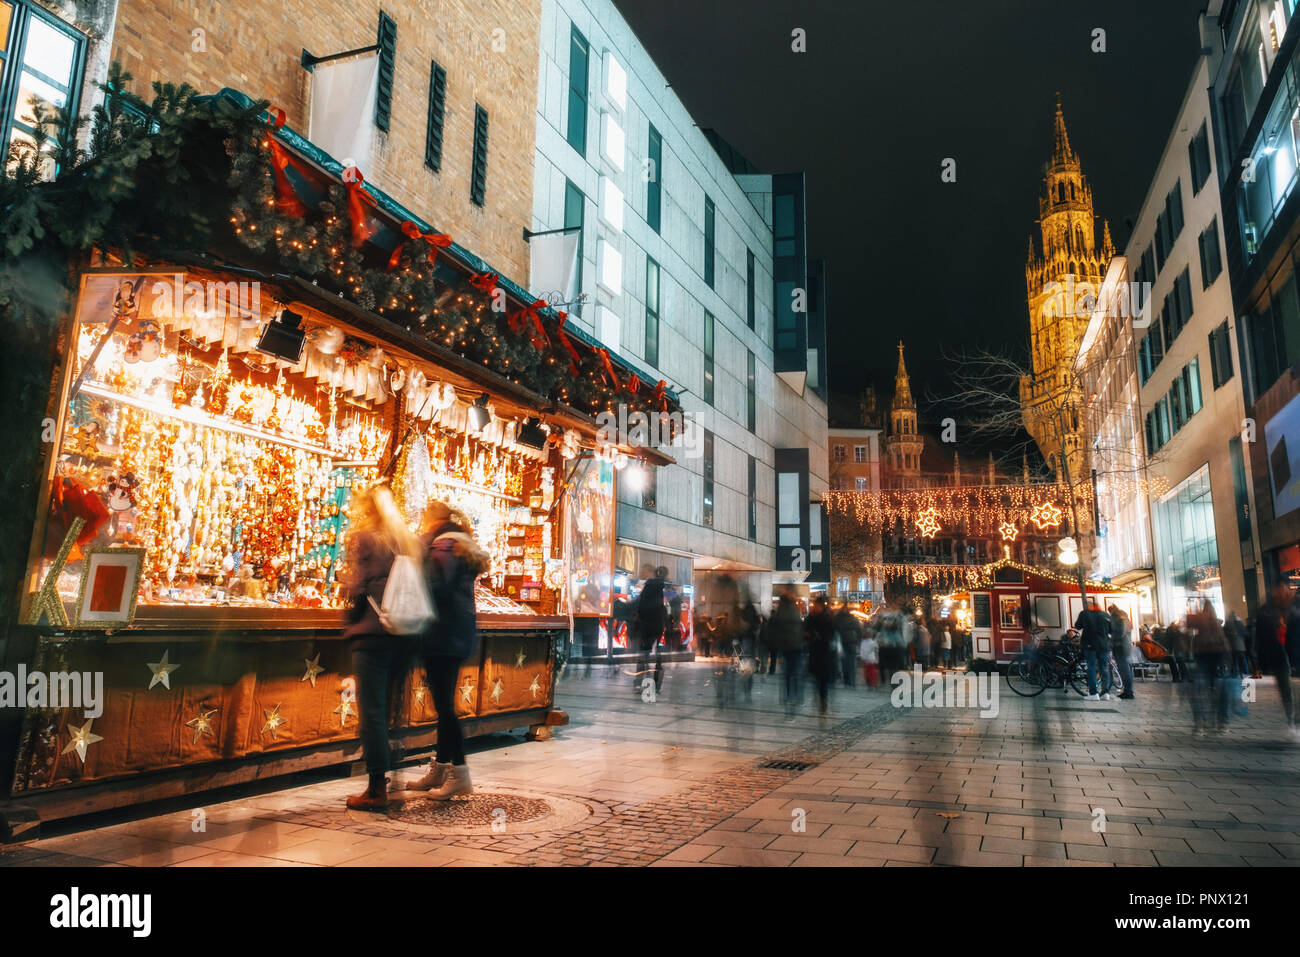 Verwischt die Menschen bewegt und Verkaufsstand auf dem Weihnachtsmarkt am Marienplatz vor dem Rathaus Neues Rathaus in München, Deutschland Stockfoto